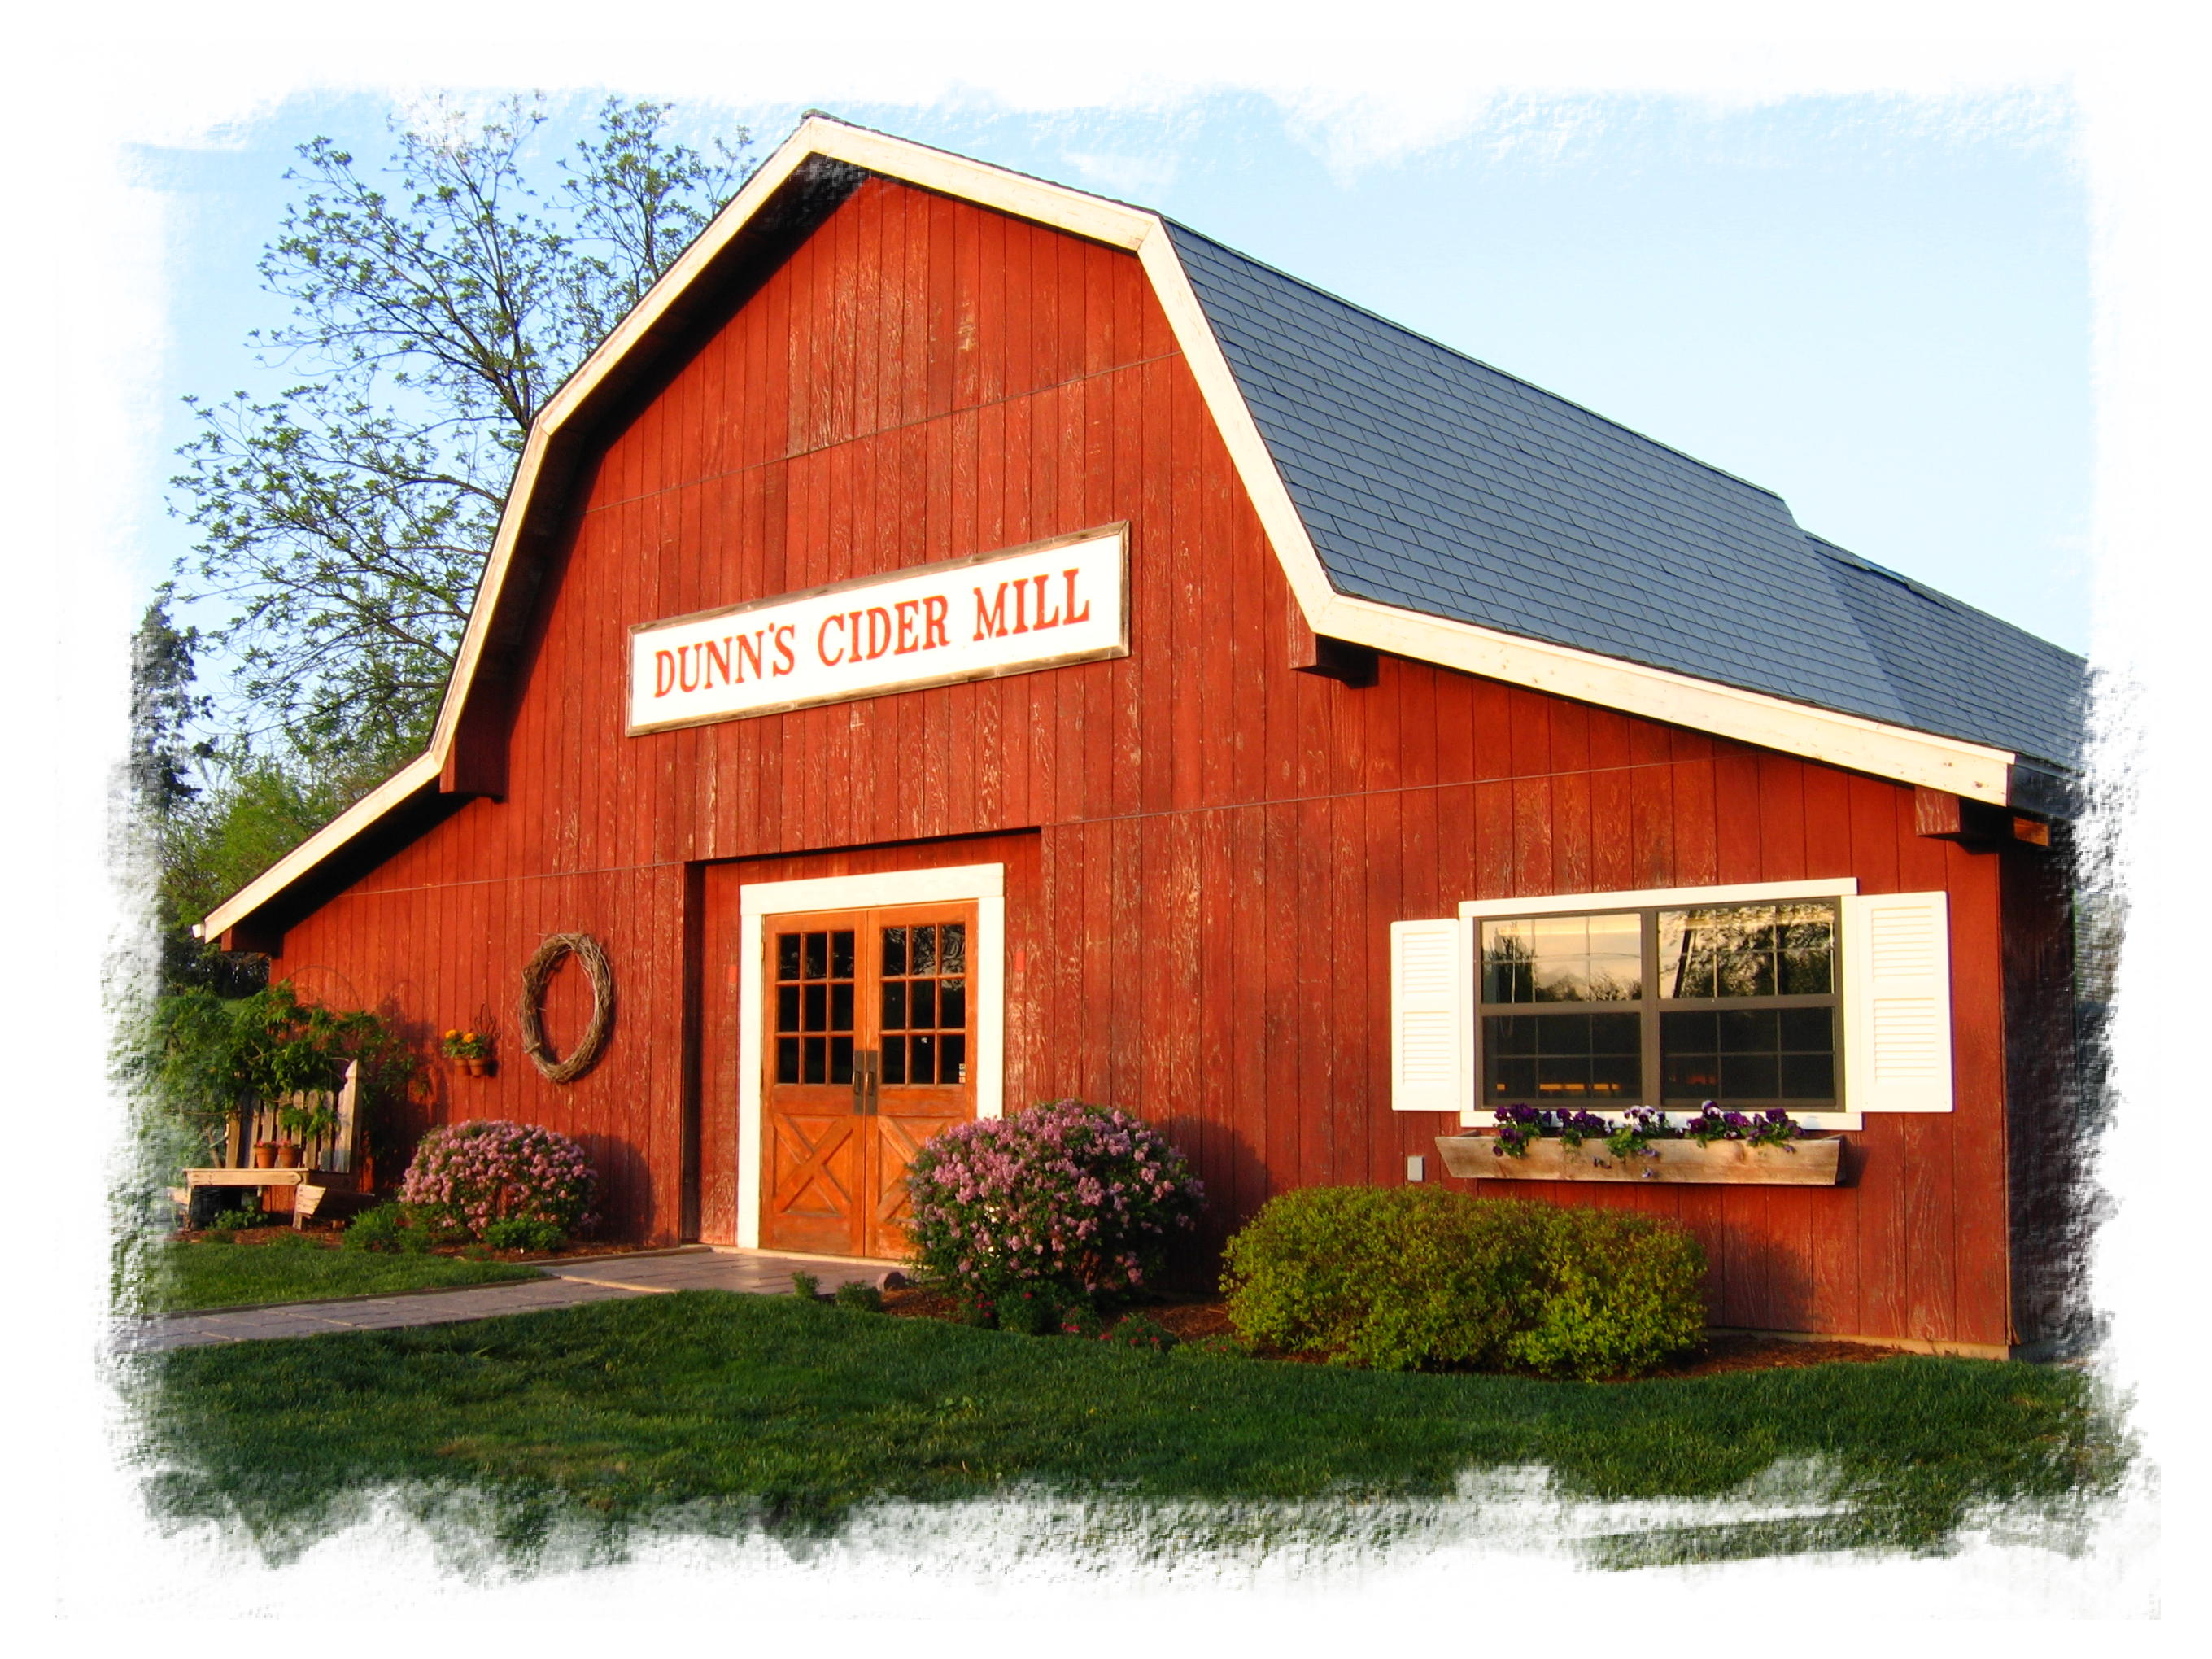 Dunn's Cider Mill Barn